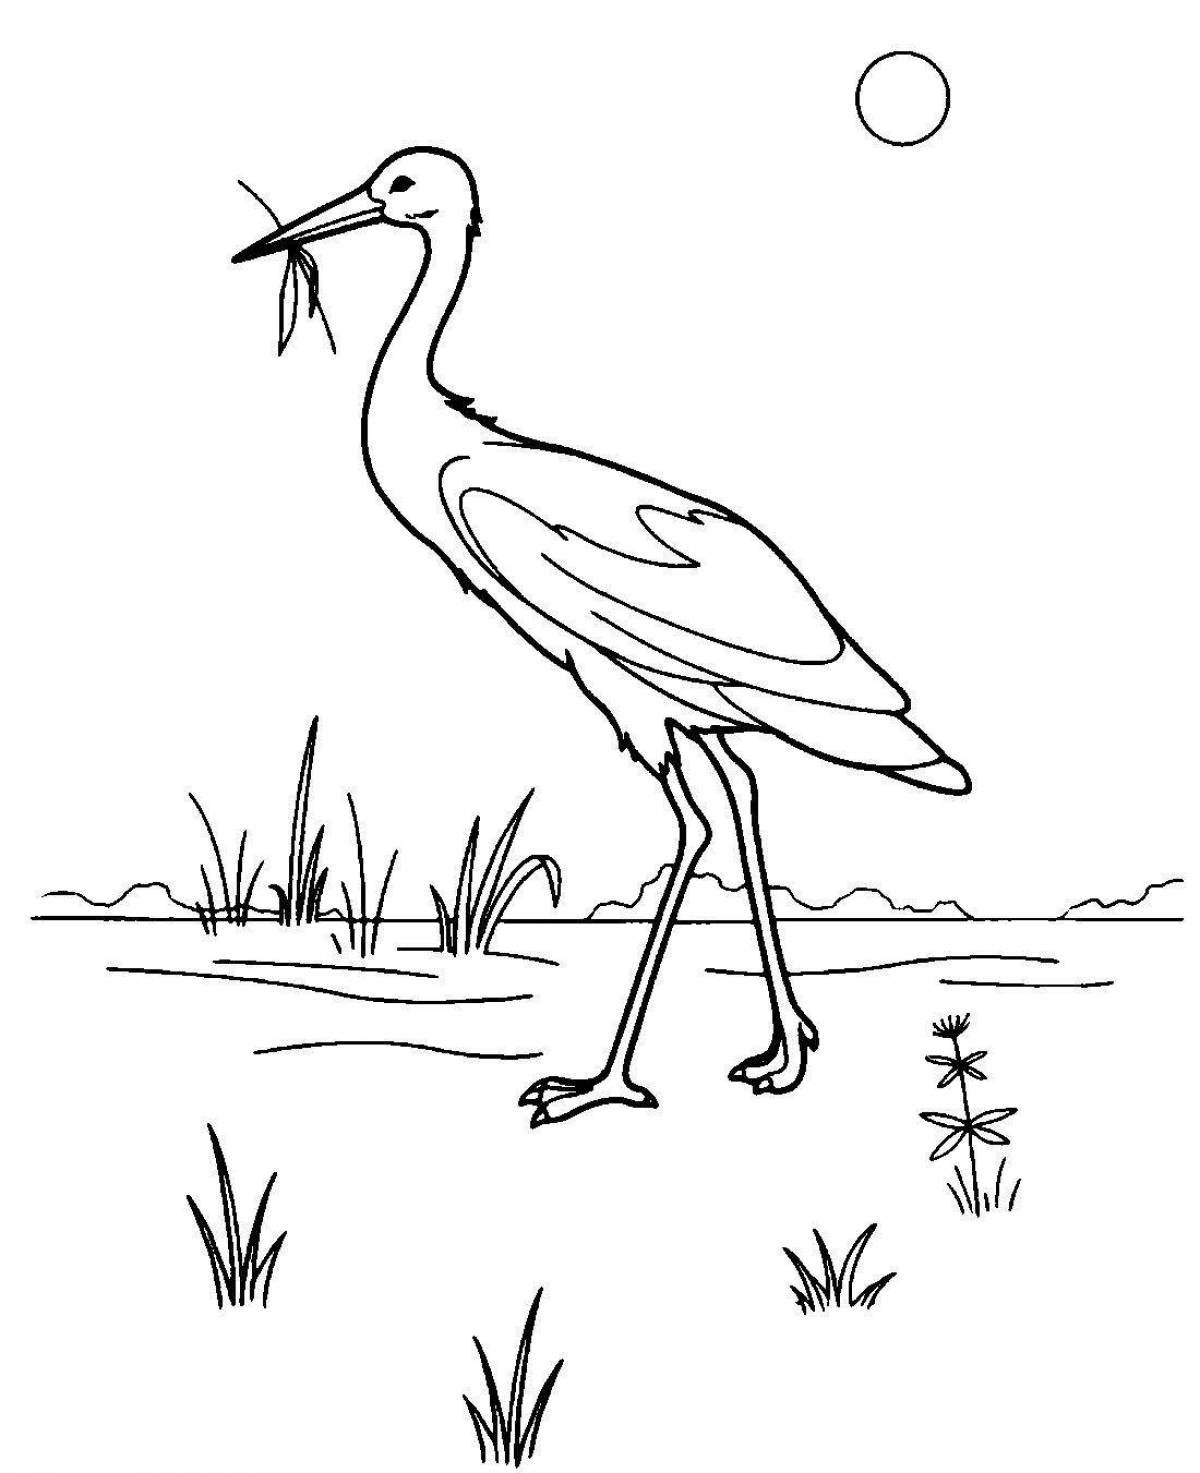 Delightful black stork coloring book for kids